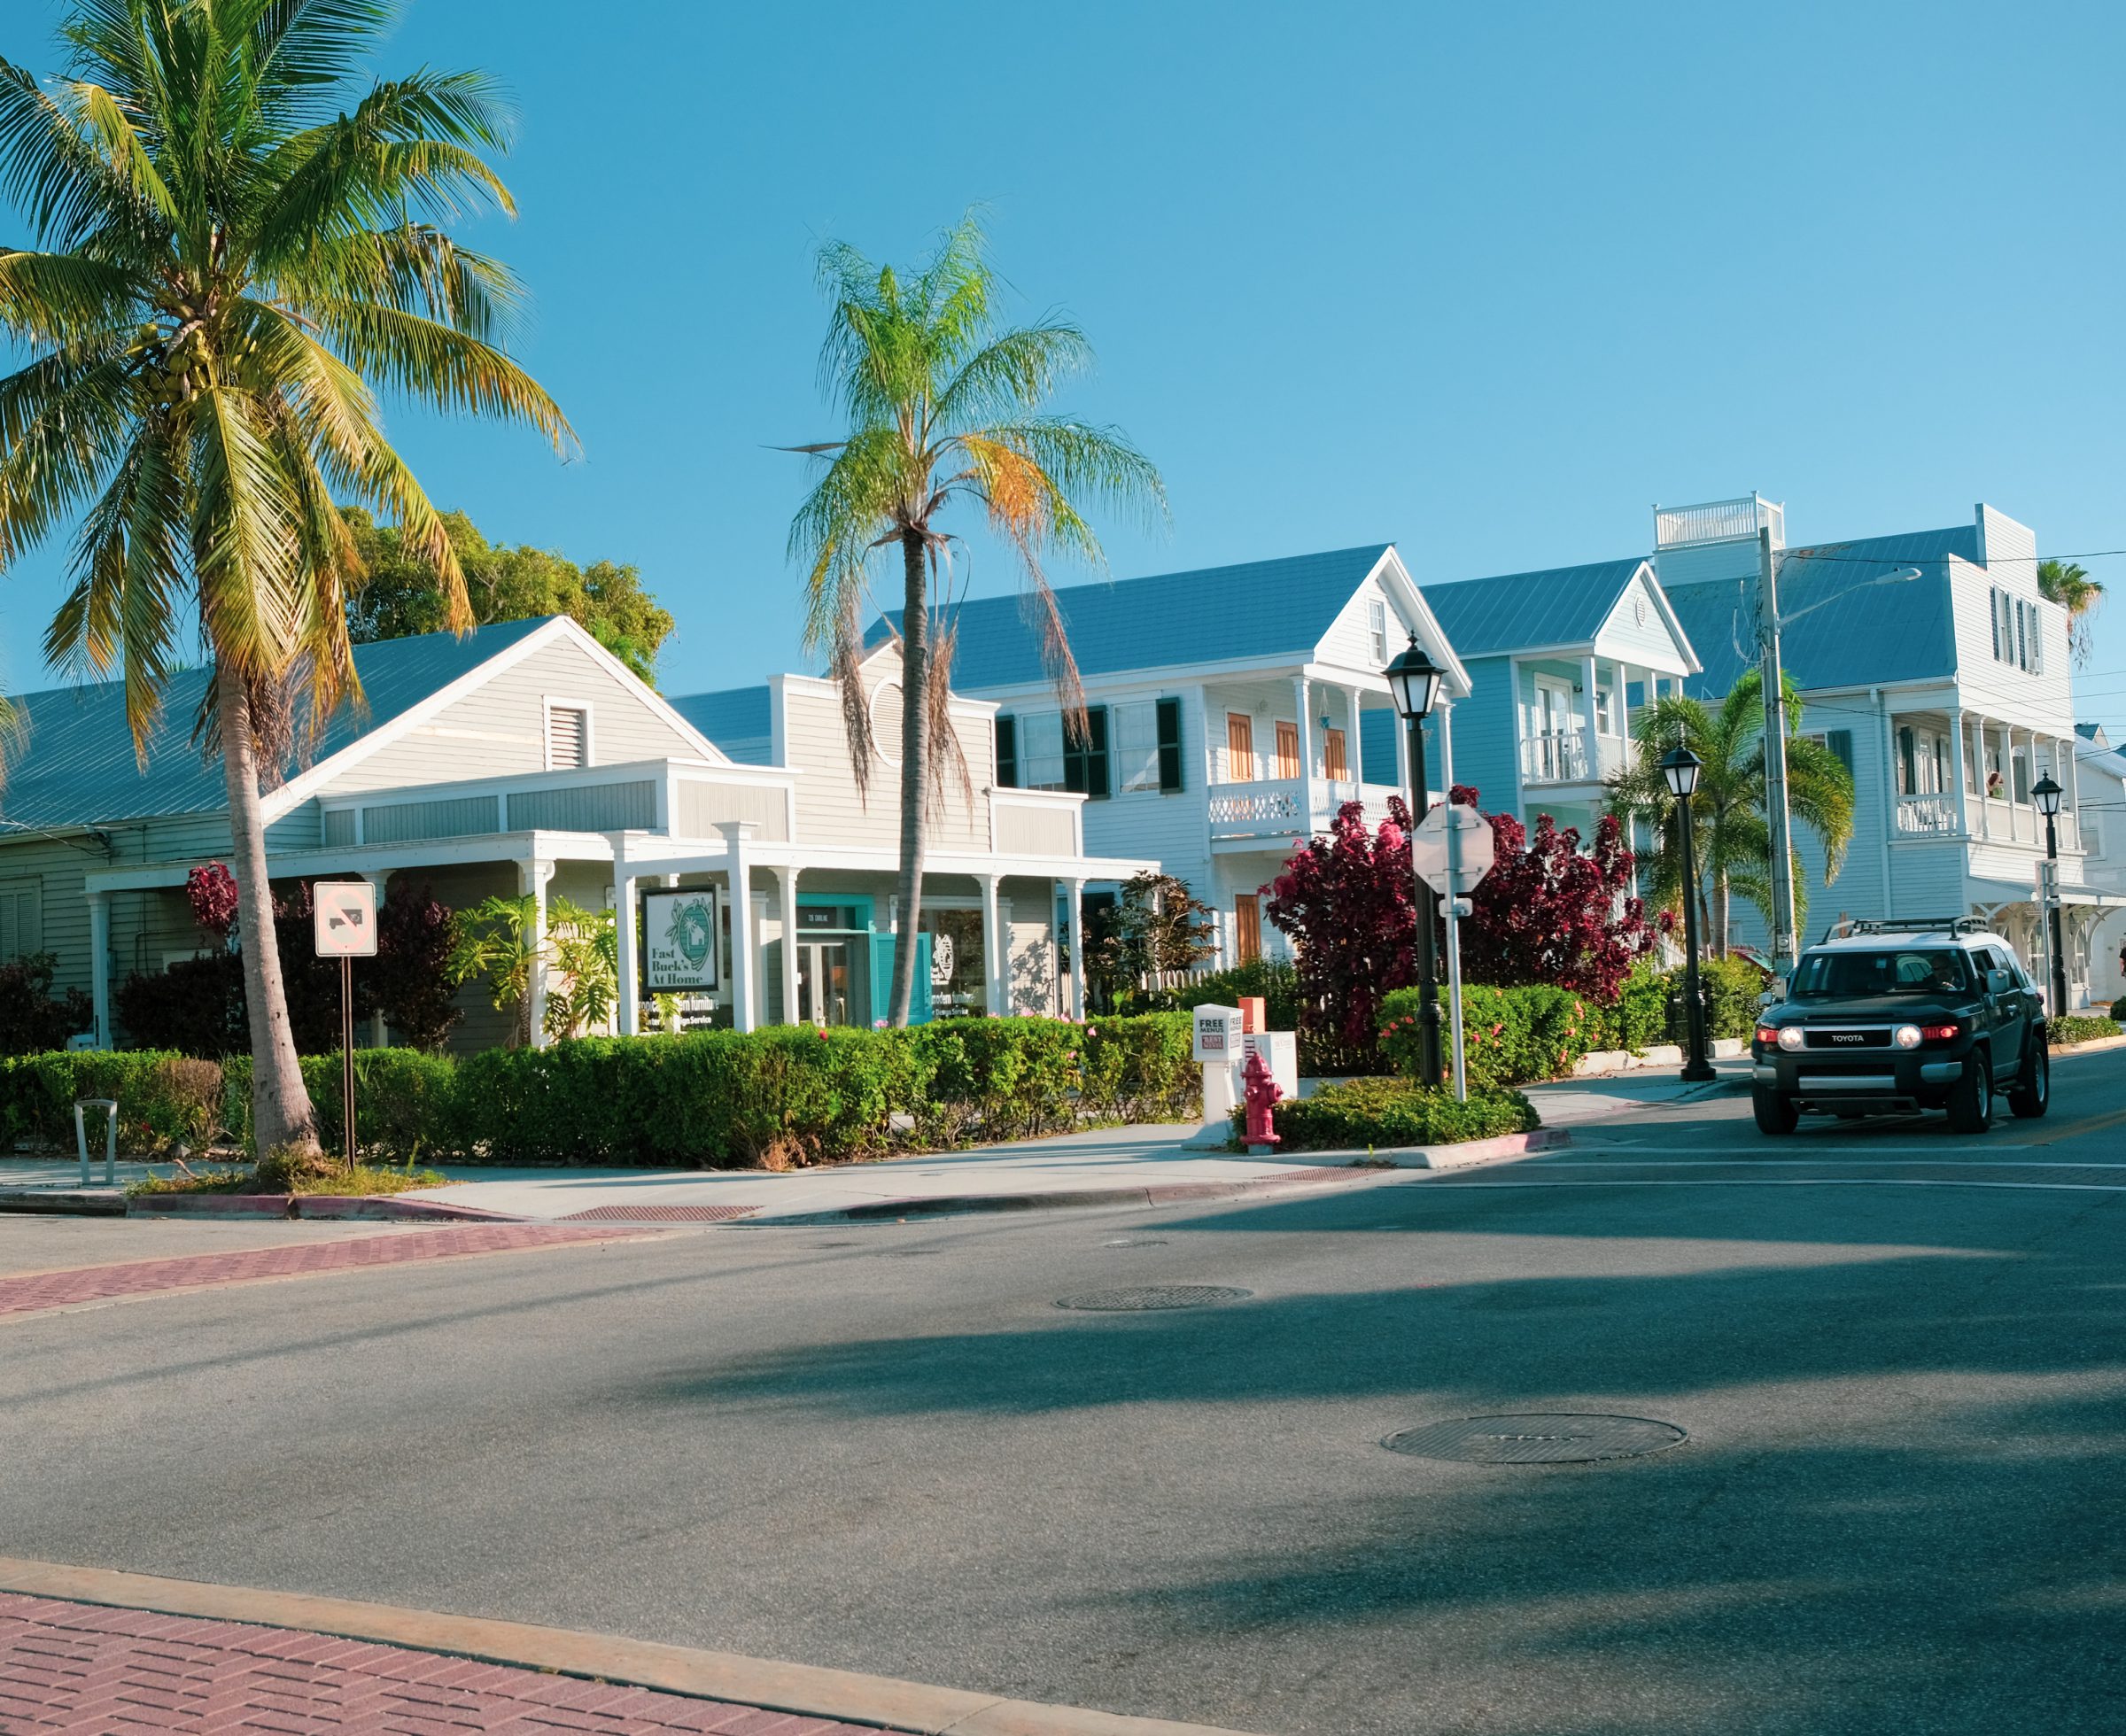 Een typische straat met prachtige koloniale huizen in Key West| Florida Keys